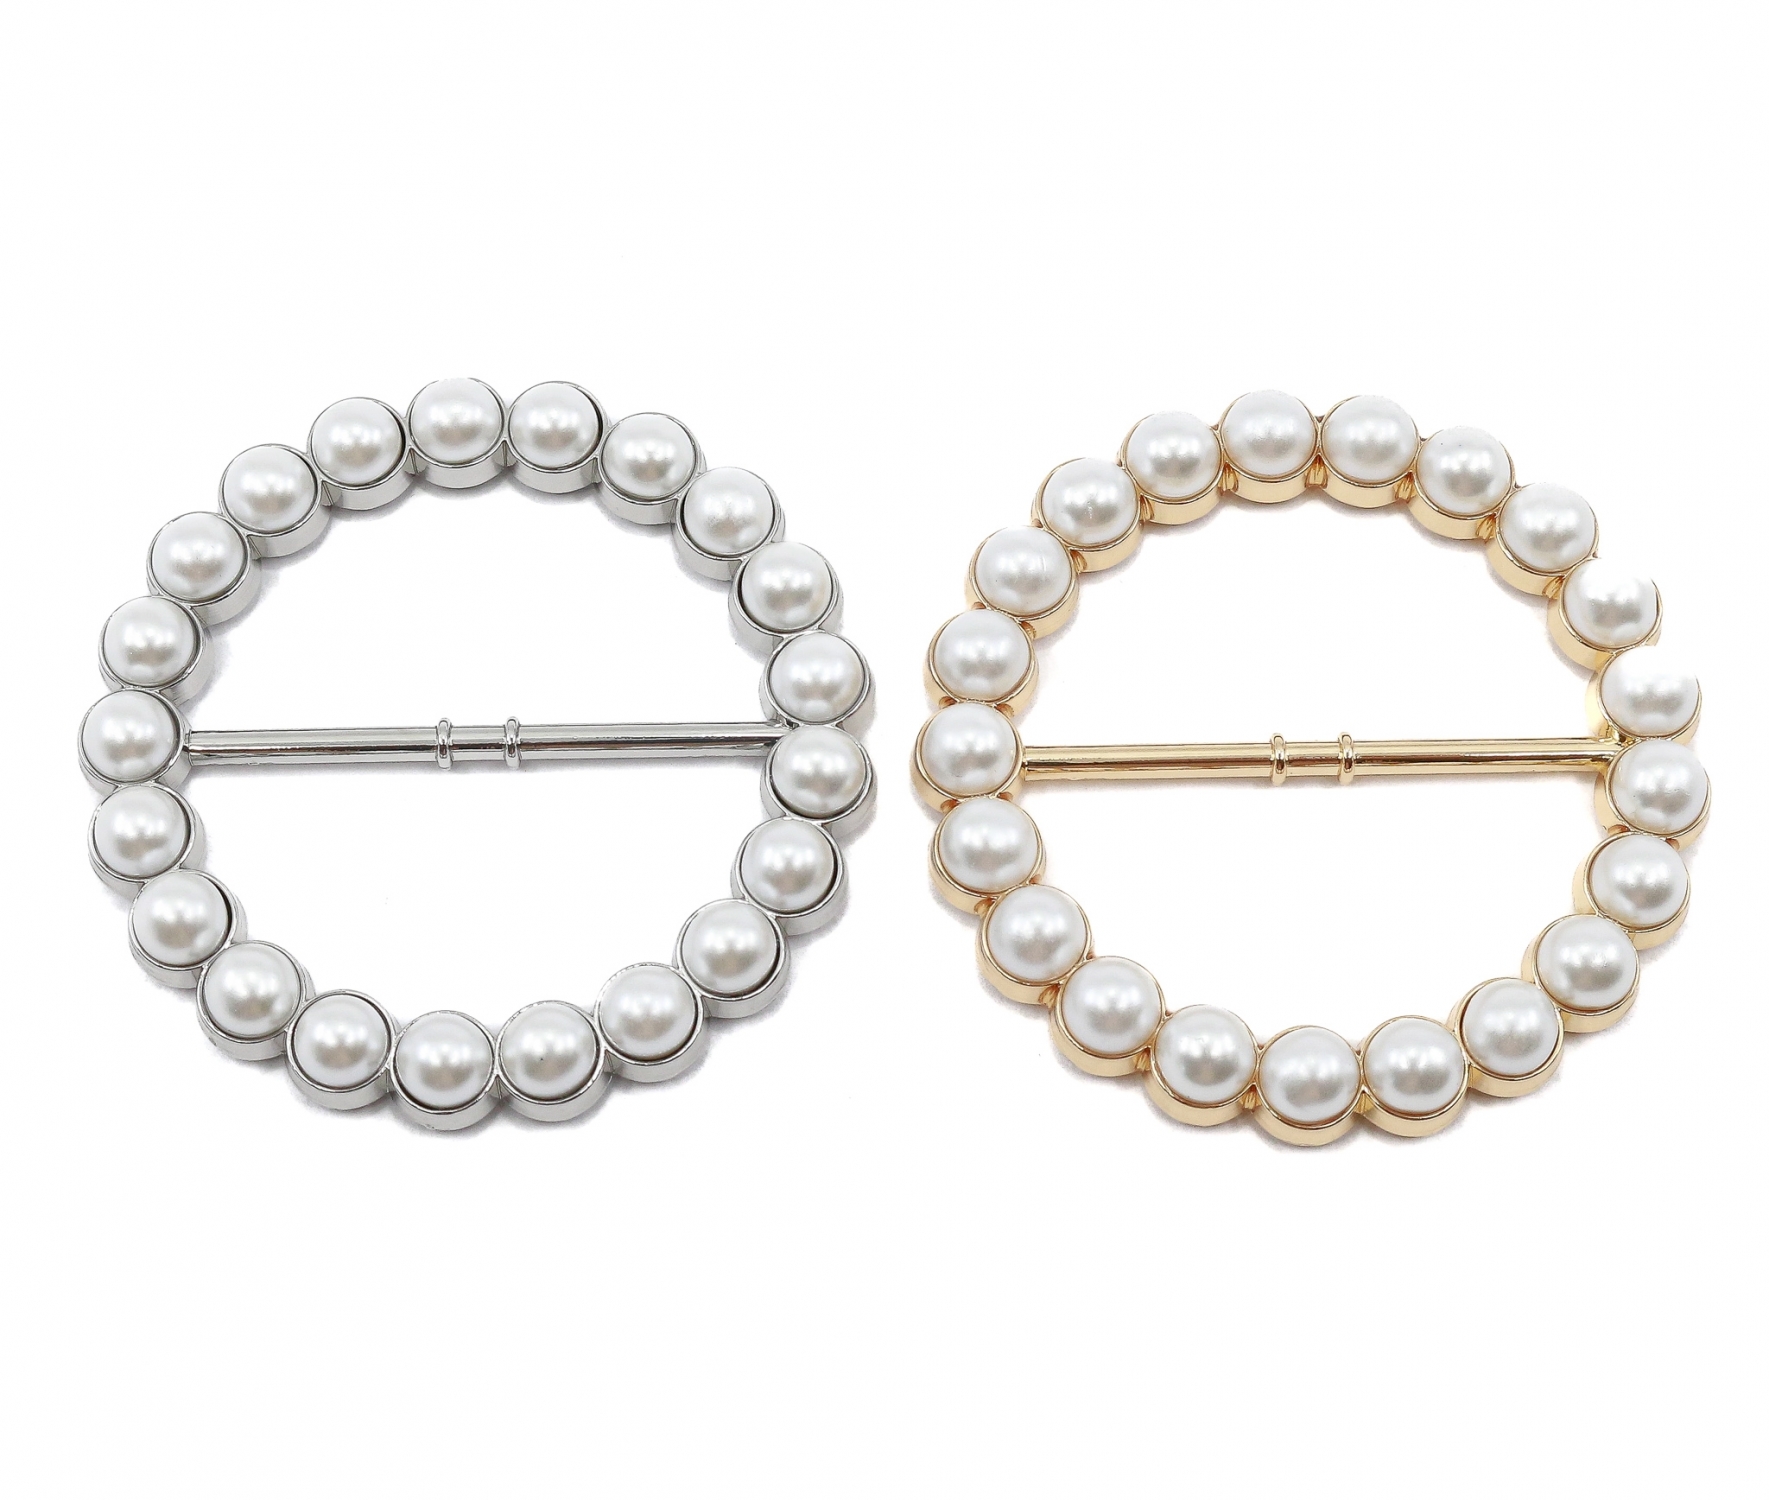 Metal Buckles with Pearls, diameter 6 cm (6 pcs/pack)Code: MY036